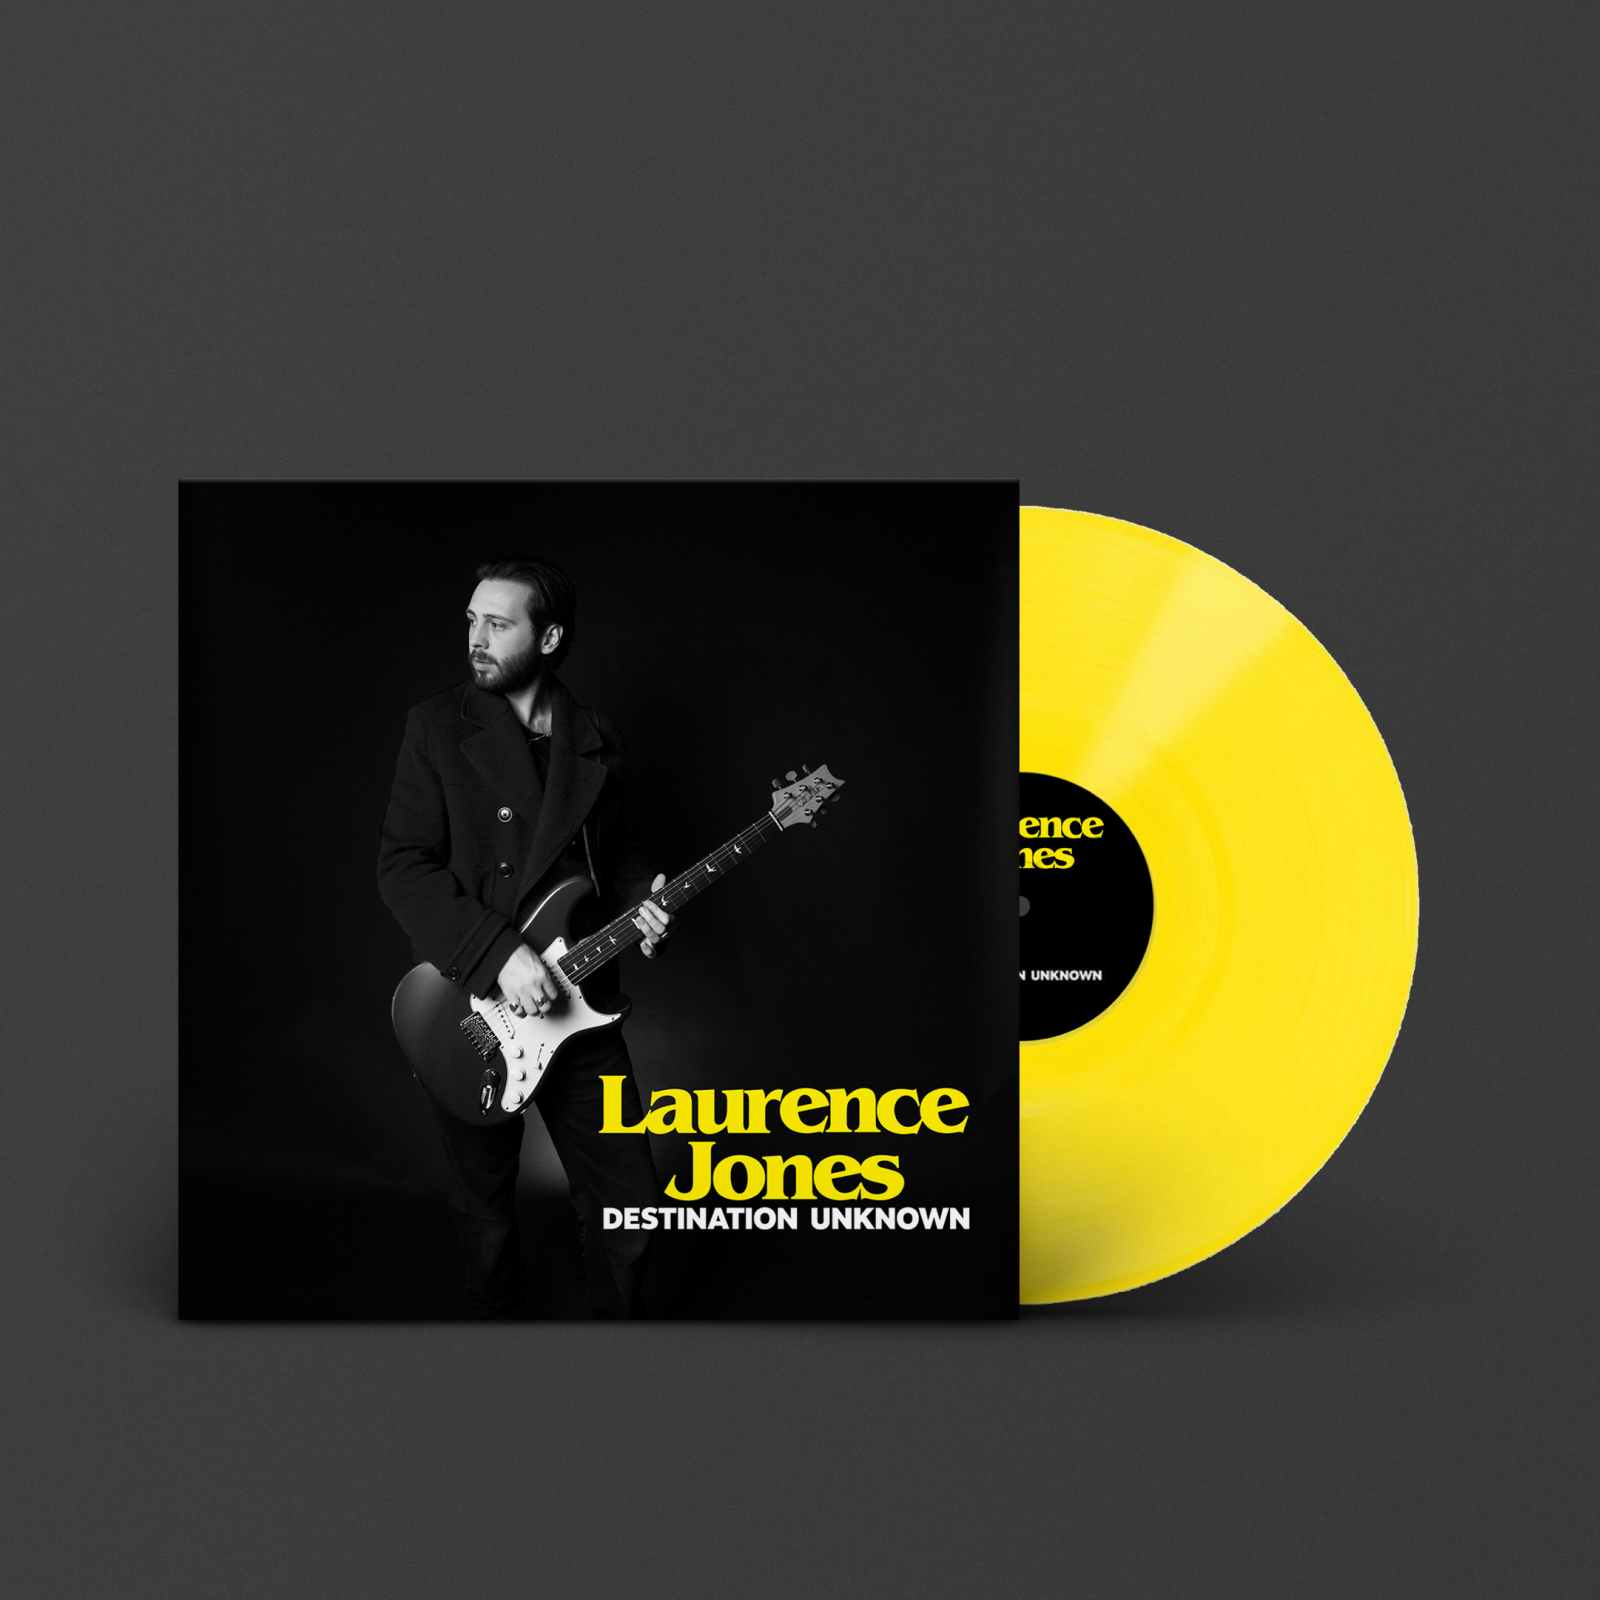 DESTINATION UNKNOWN de Laurence Jones, el nuevo álbum de Marshall con el conmovedor sonido del blues eléctrico en un LP amarillo de edición limitada.